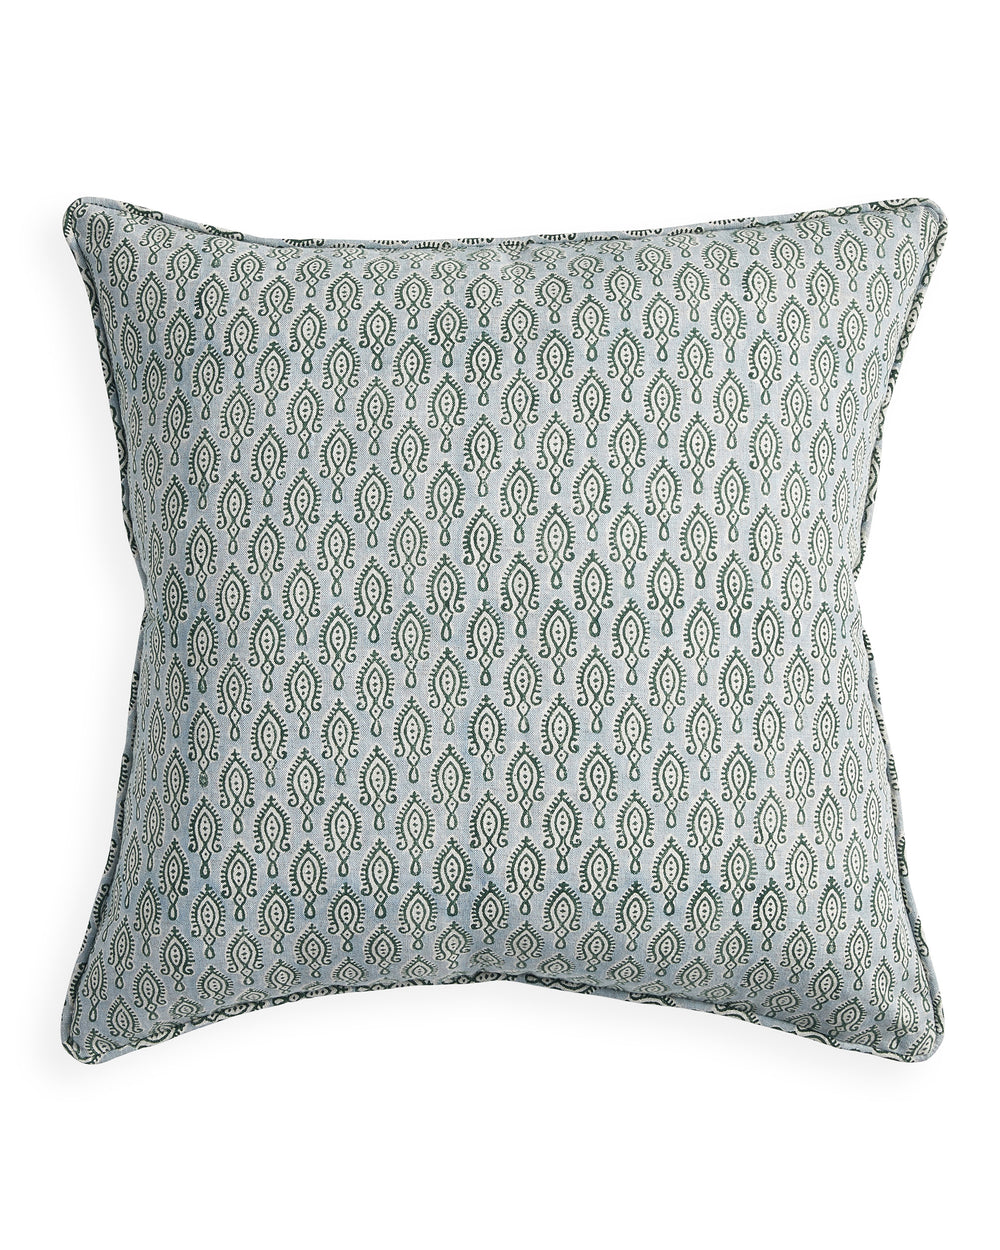 Malabar Byzantine linen cushion